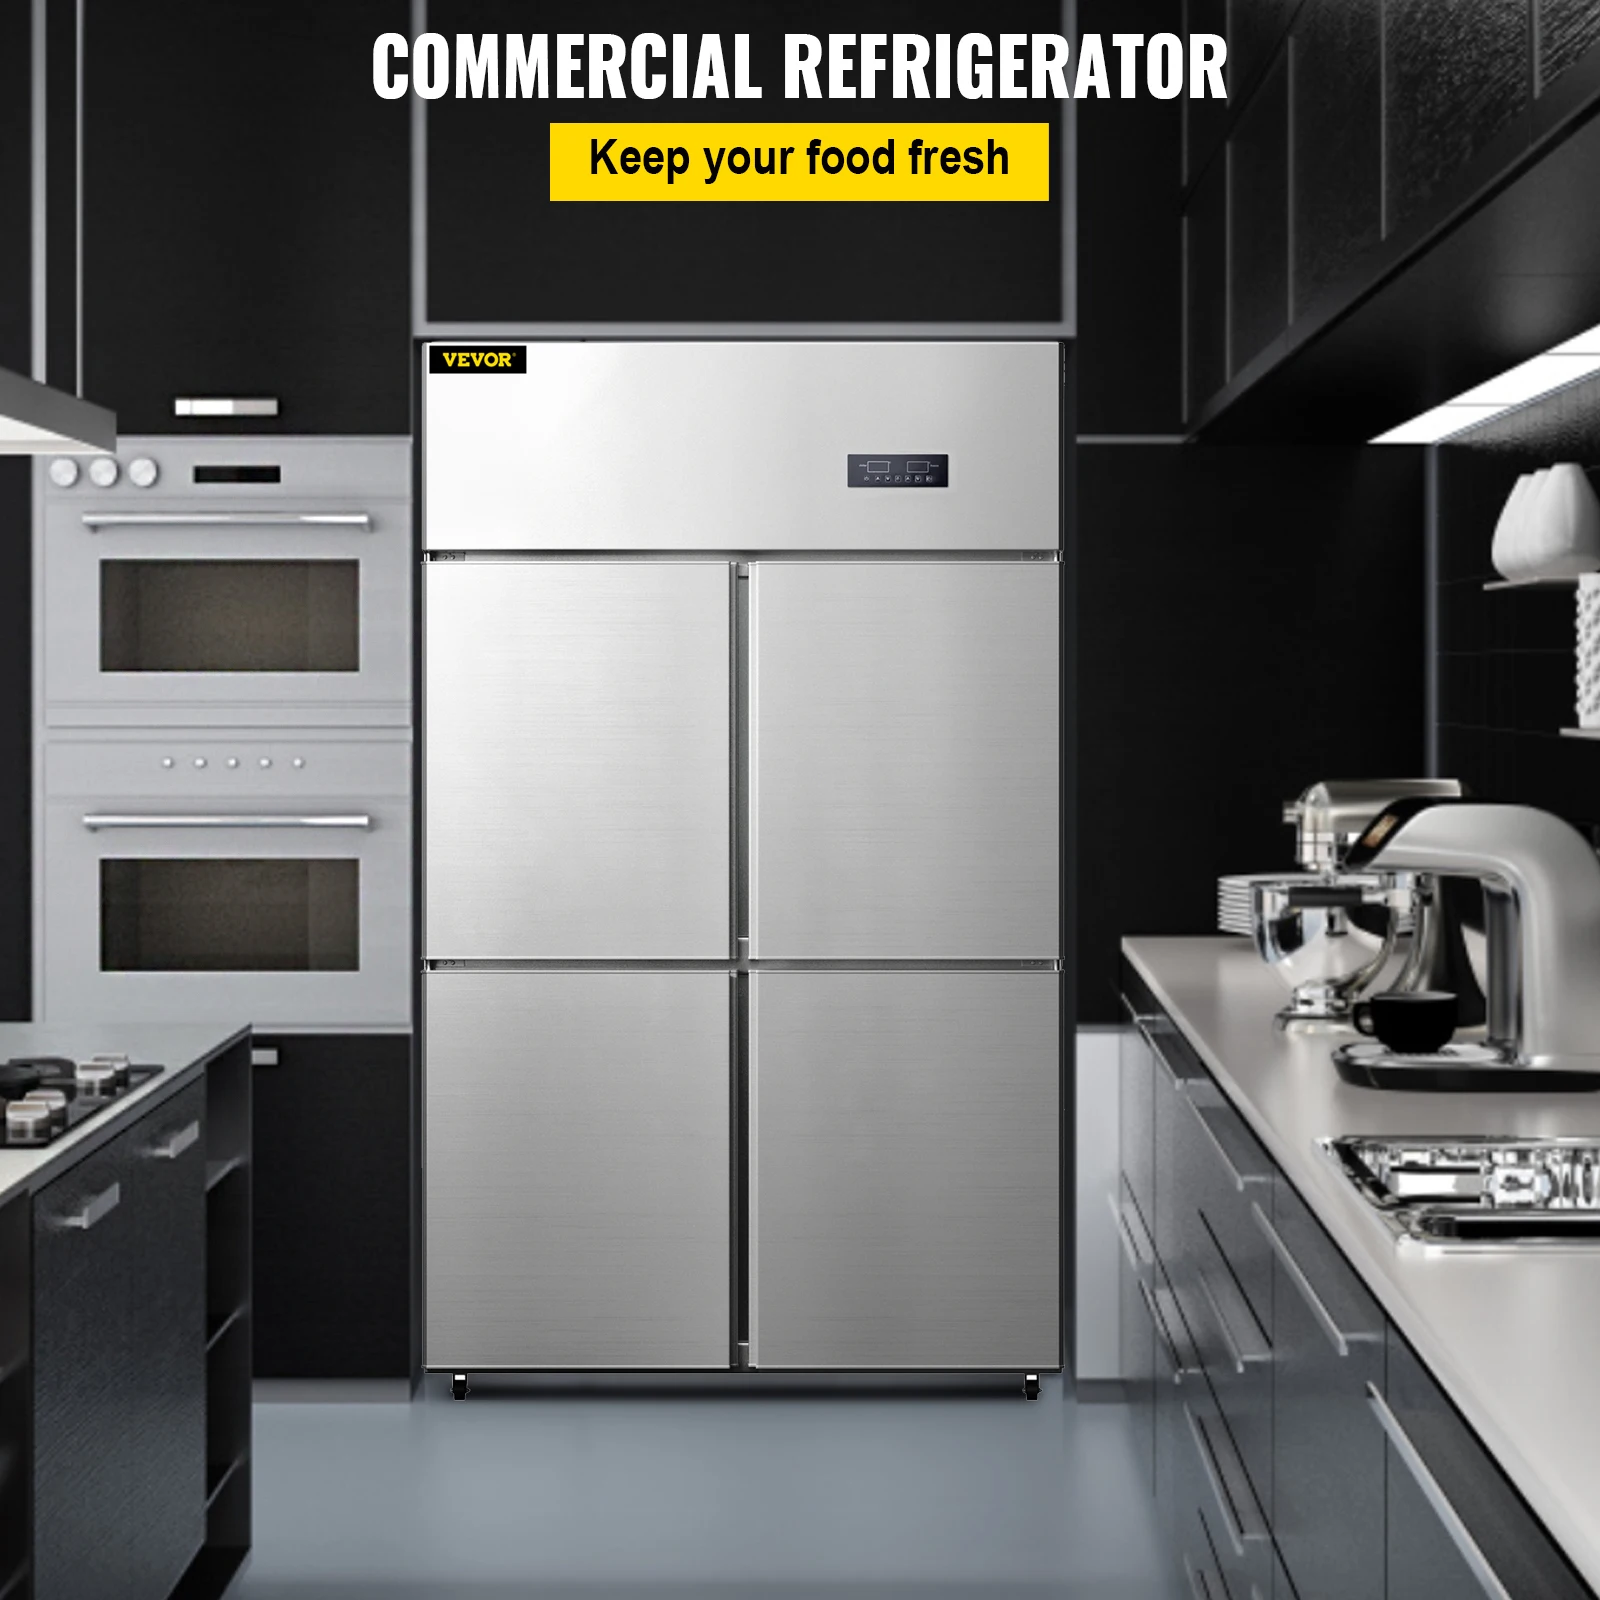 Коммерческий 4-дверный вертикальный холодильник VEVOR объемом 27,5 куб. футов из нержавеющей стали с двойным контролем температуры для кухни ресторана